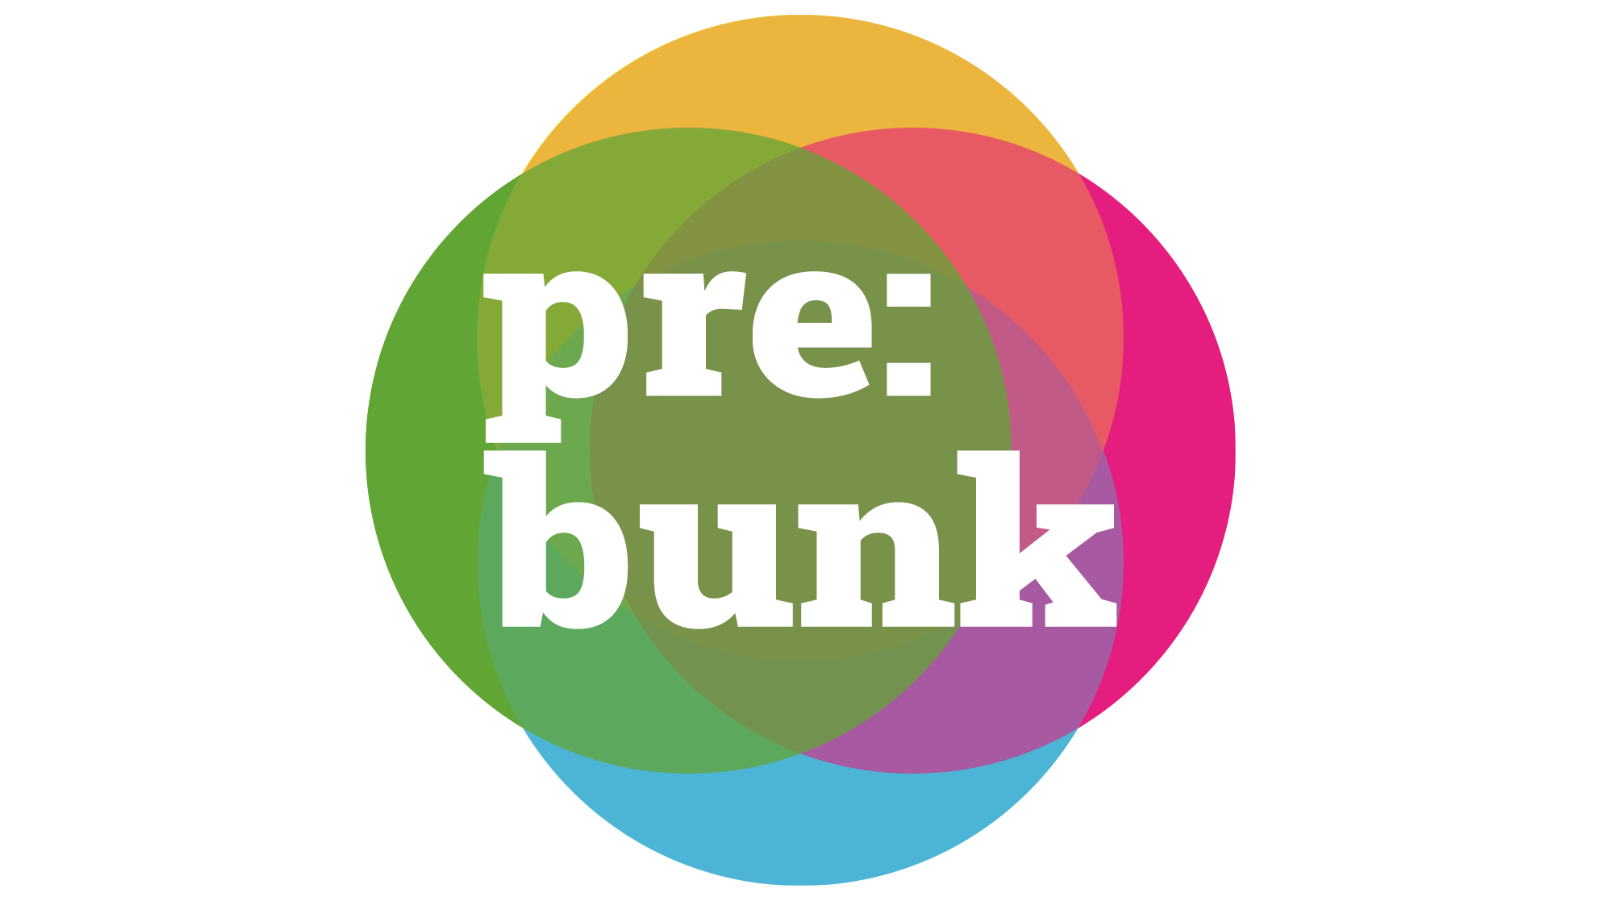 prebunk_logo_16_9